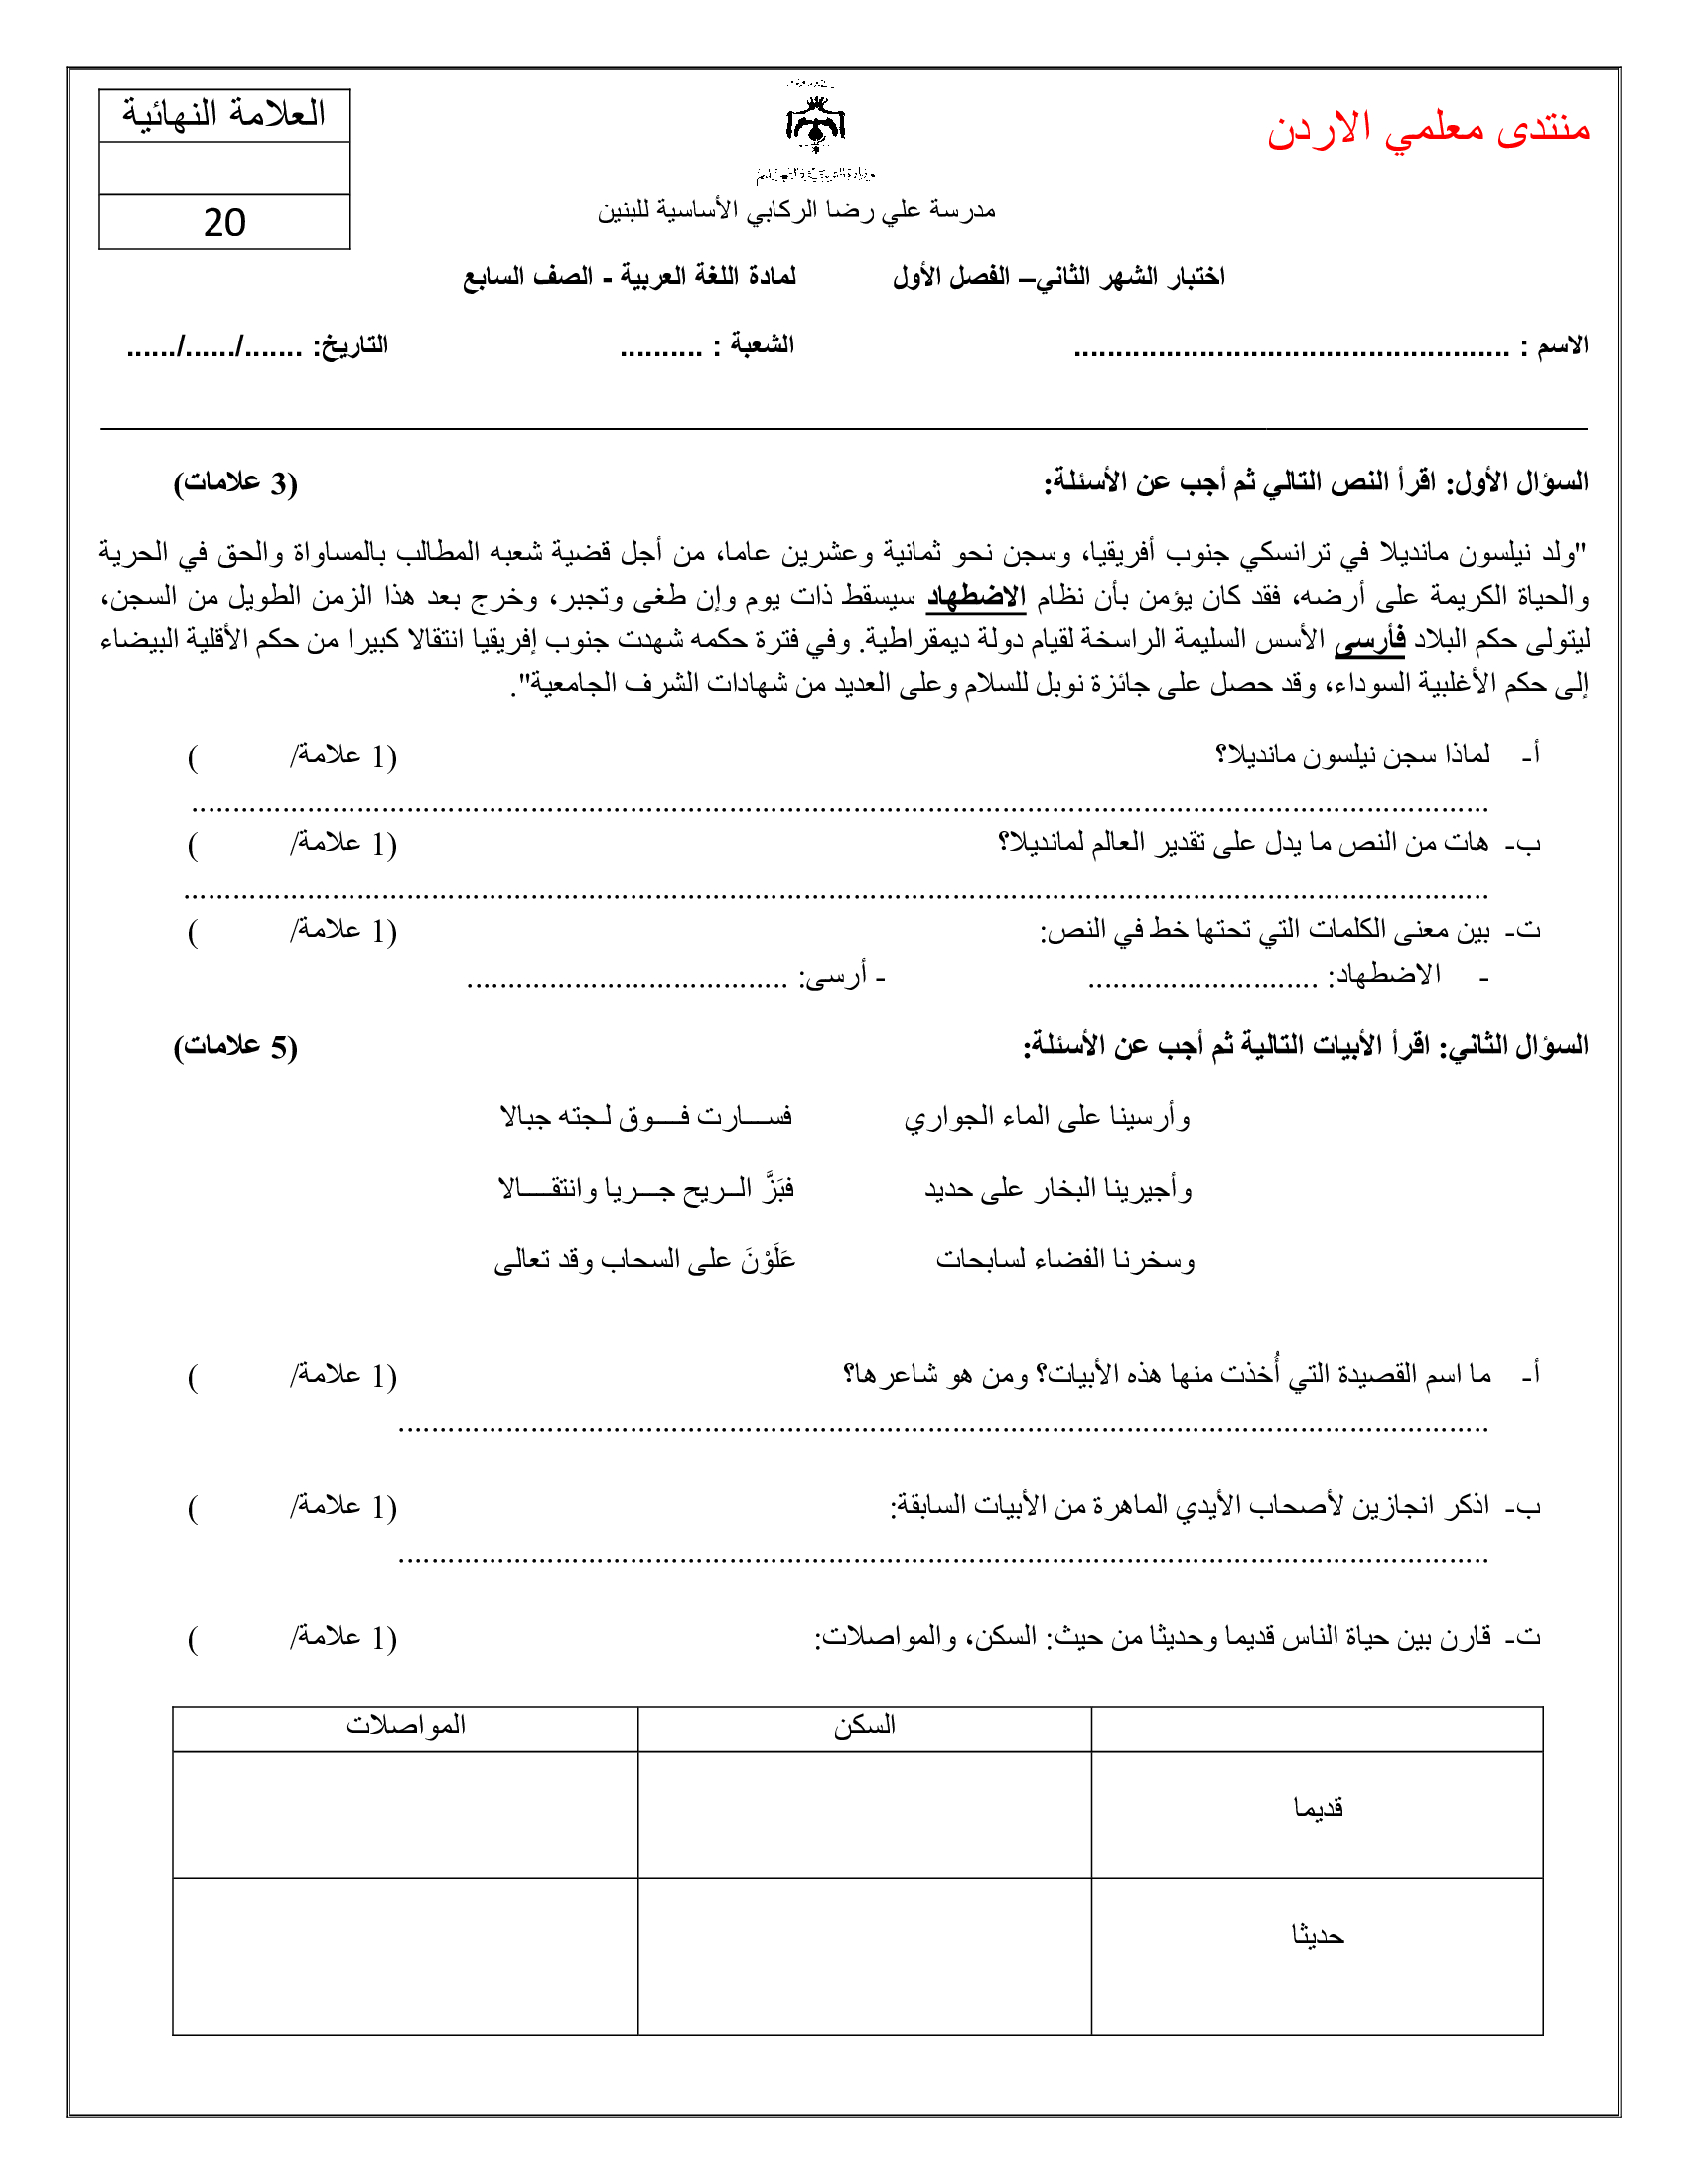 اختبار اللغة العربية الشهر الثاني للصف السابع الفصل الاول 2019-0.jpg